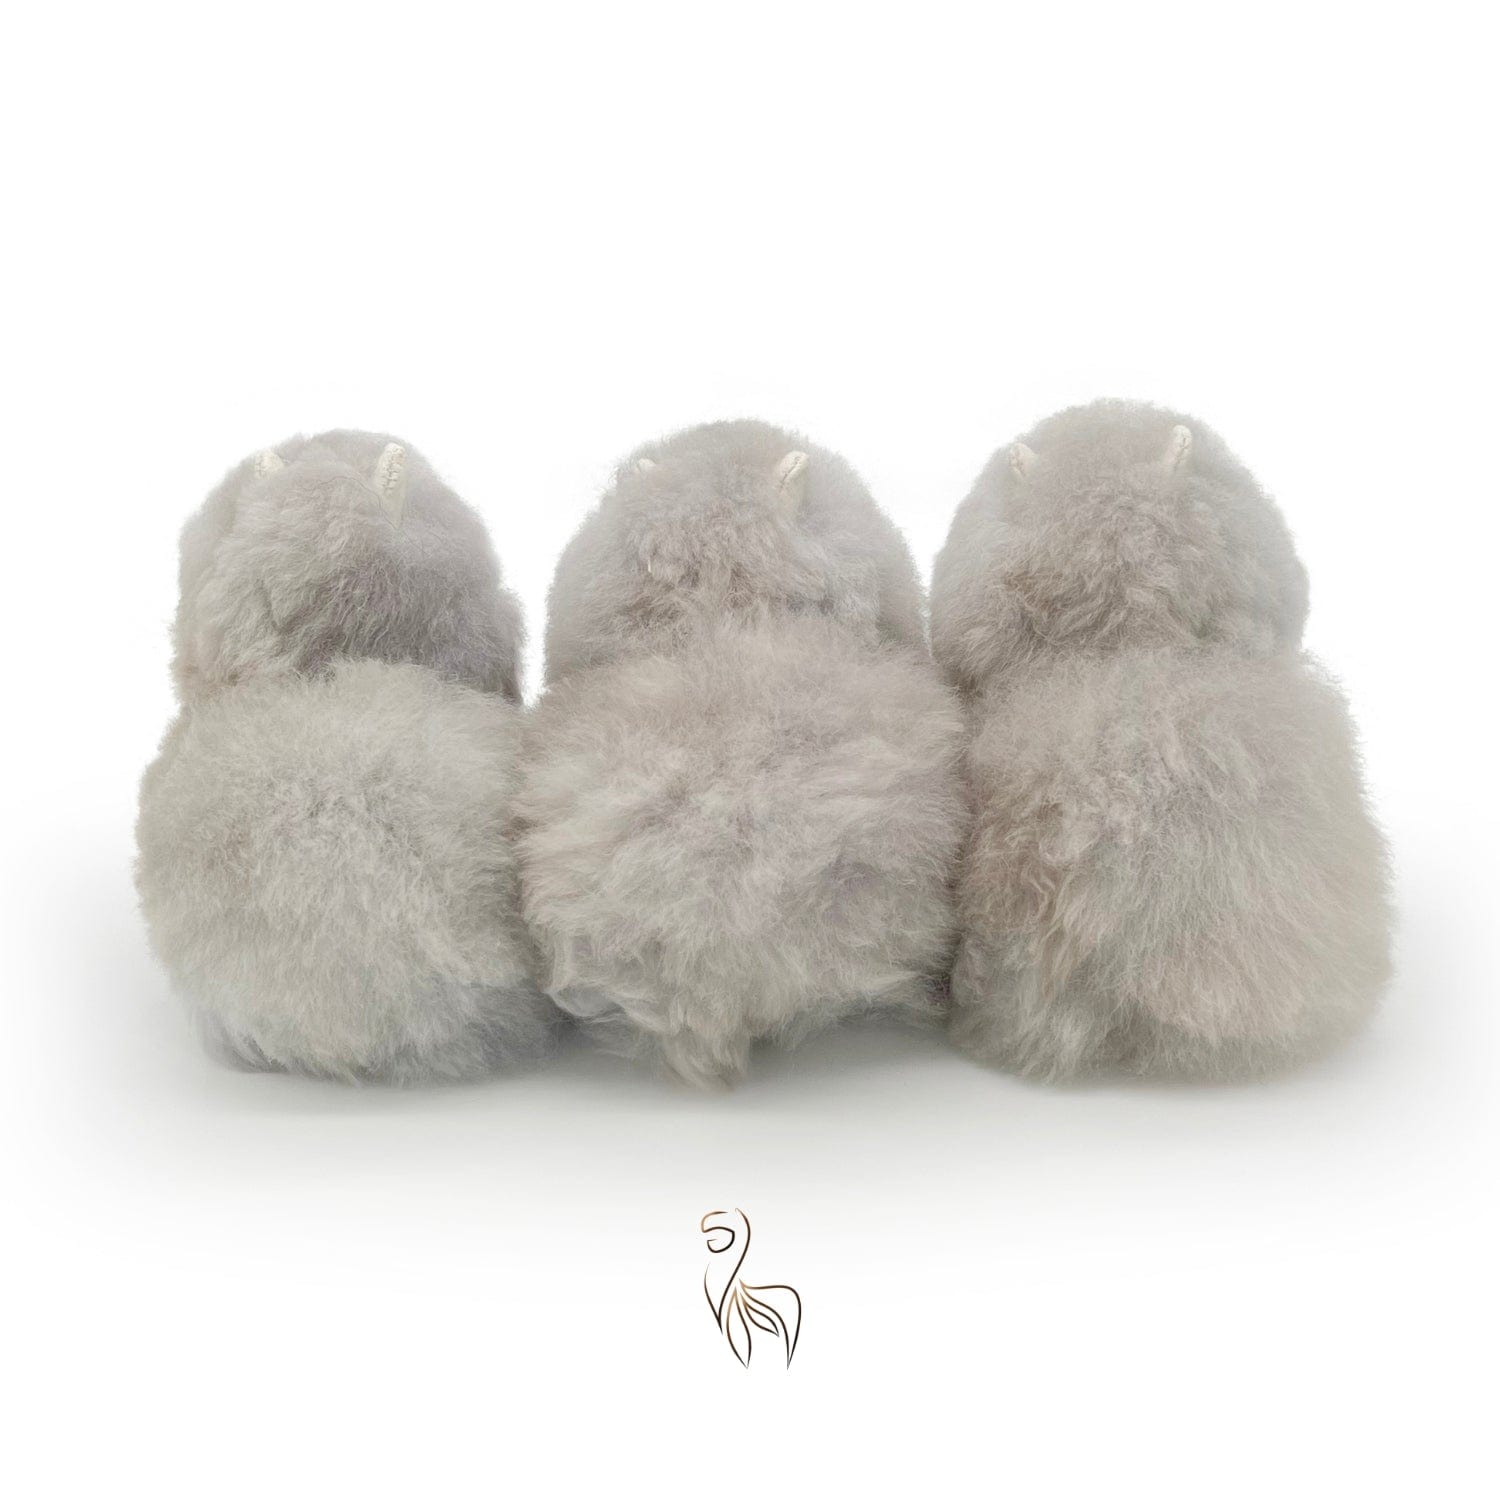 Silver - Mini Alpaca Toy (15cm) - Limited Edition